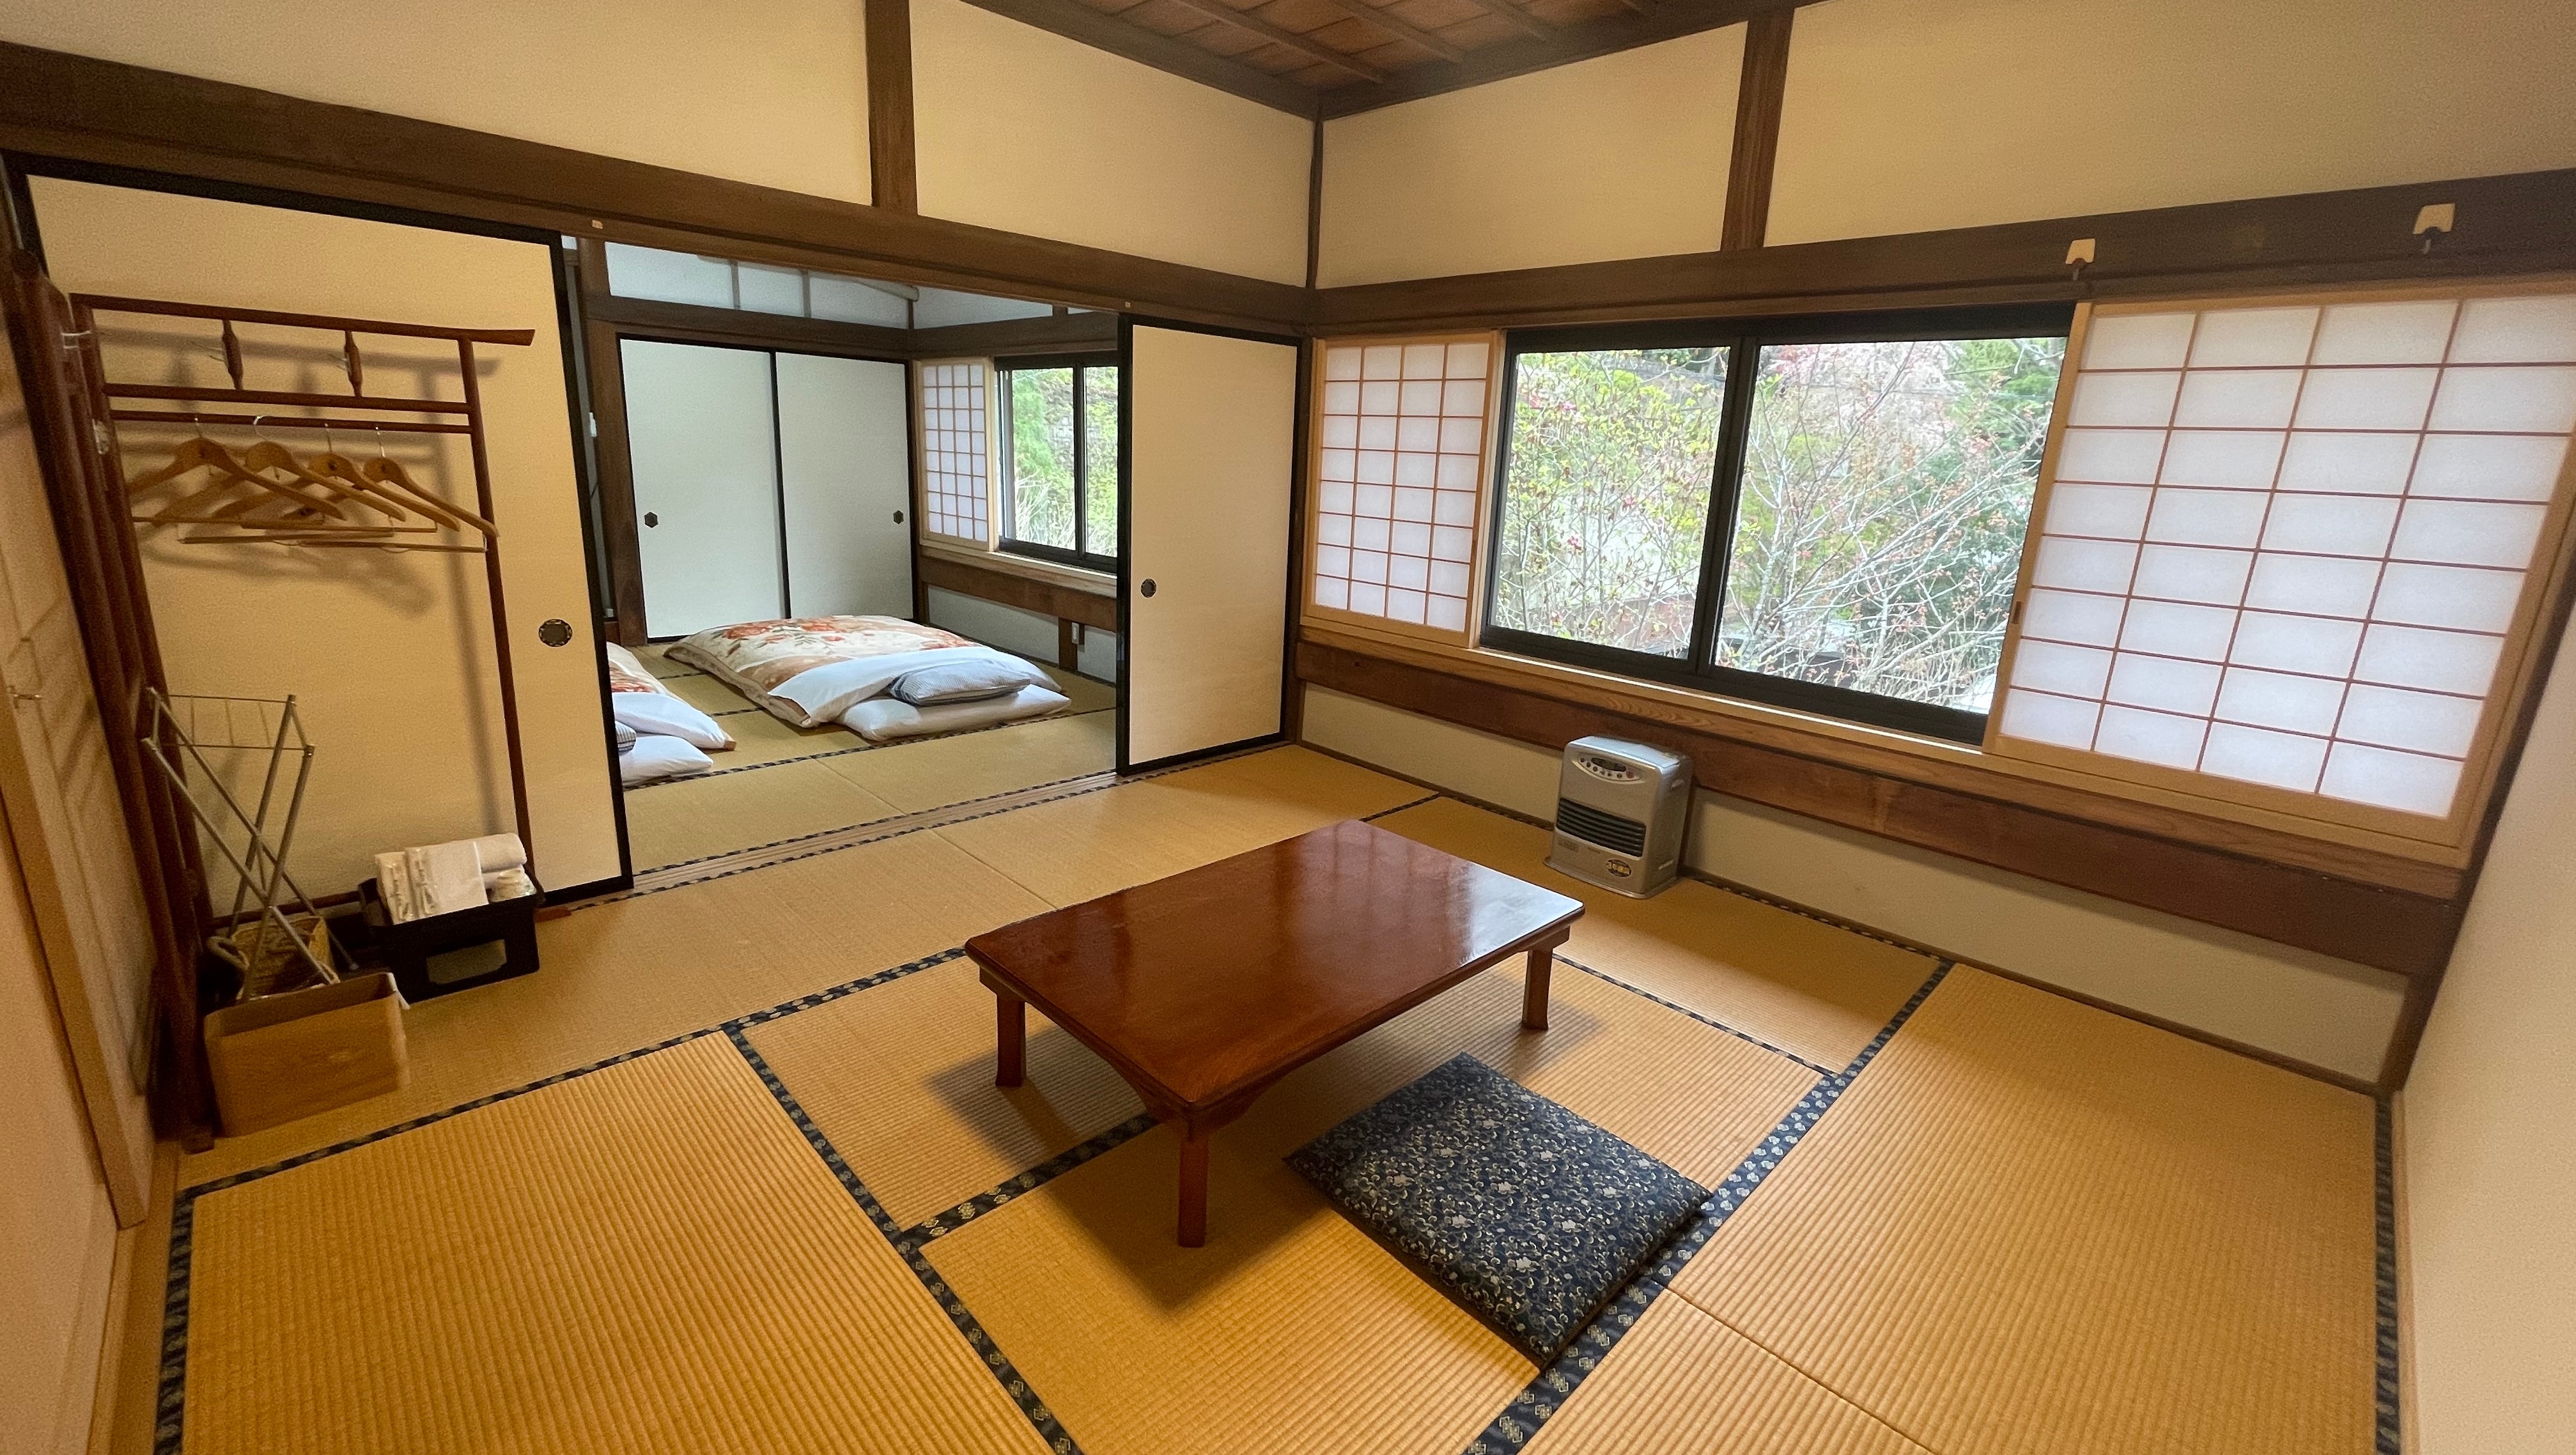 【日式房2房】日式房-16張榻榻米迎接愉快的宿房早晨